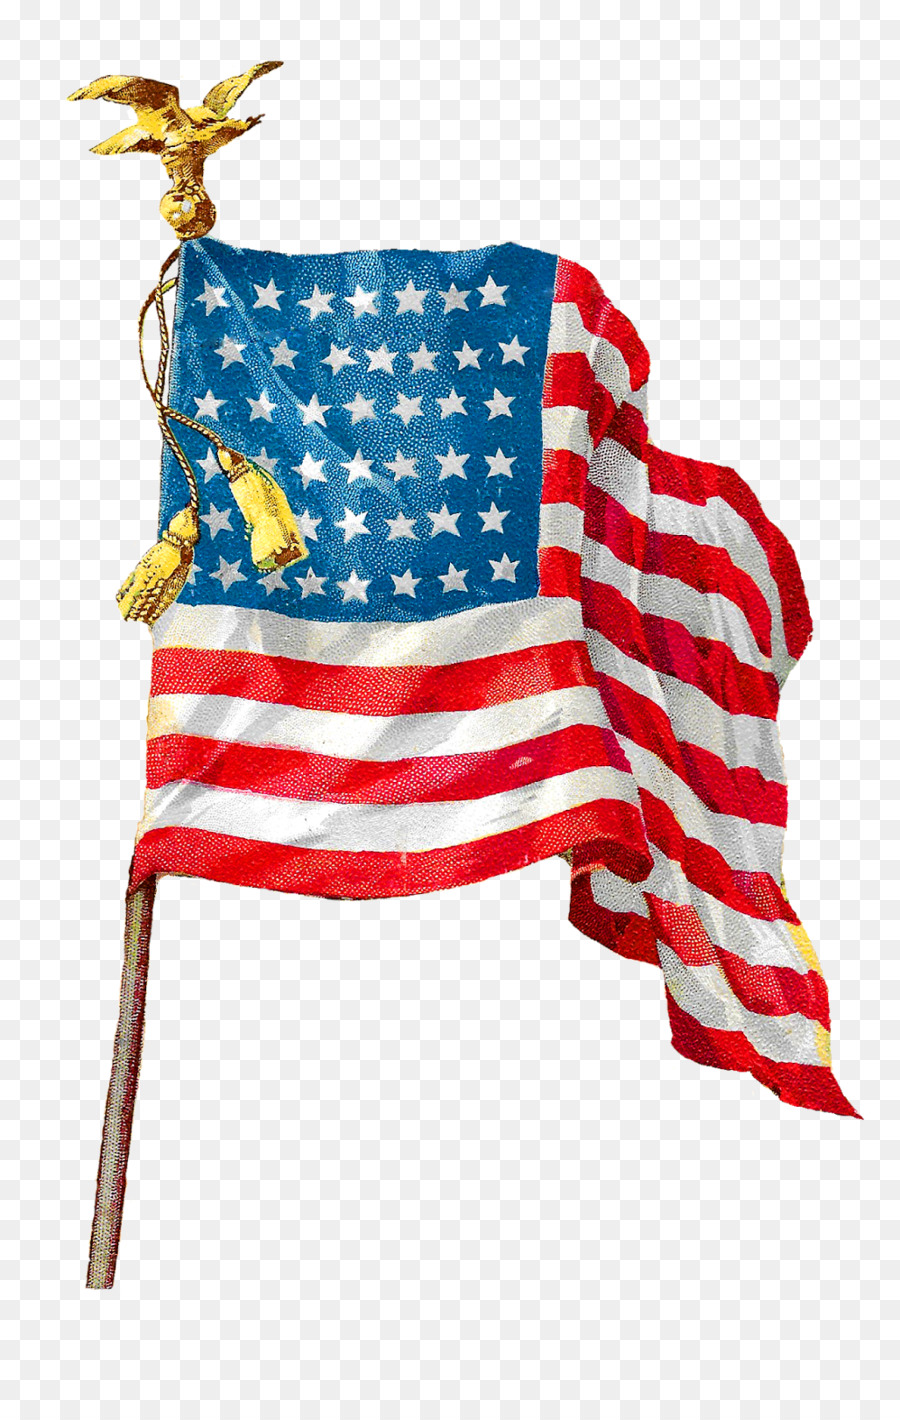 Flagge der Vereinigten Staaten clipart - amerikanische Flagge